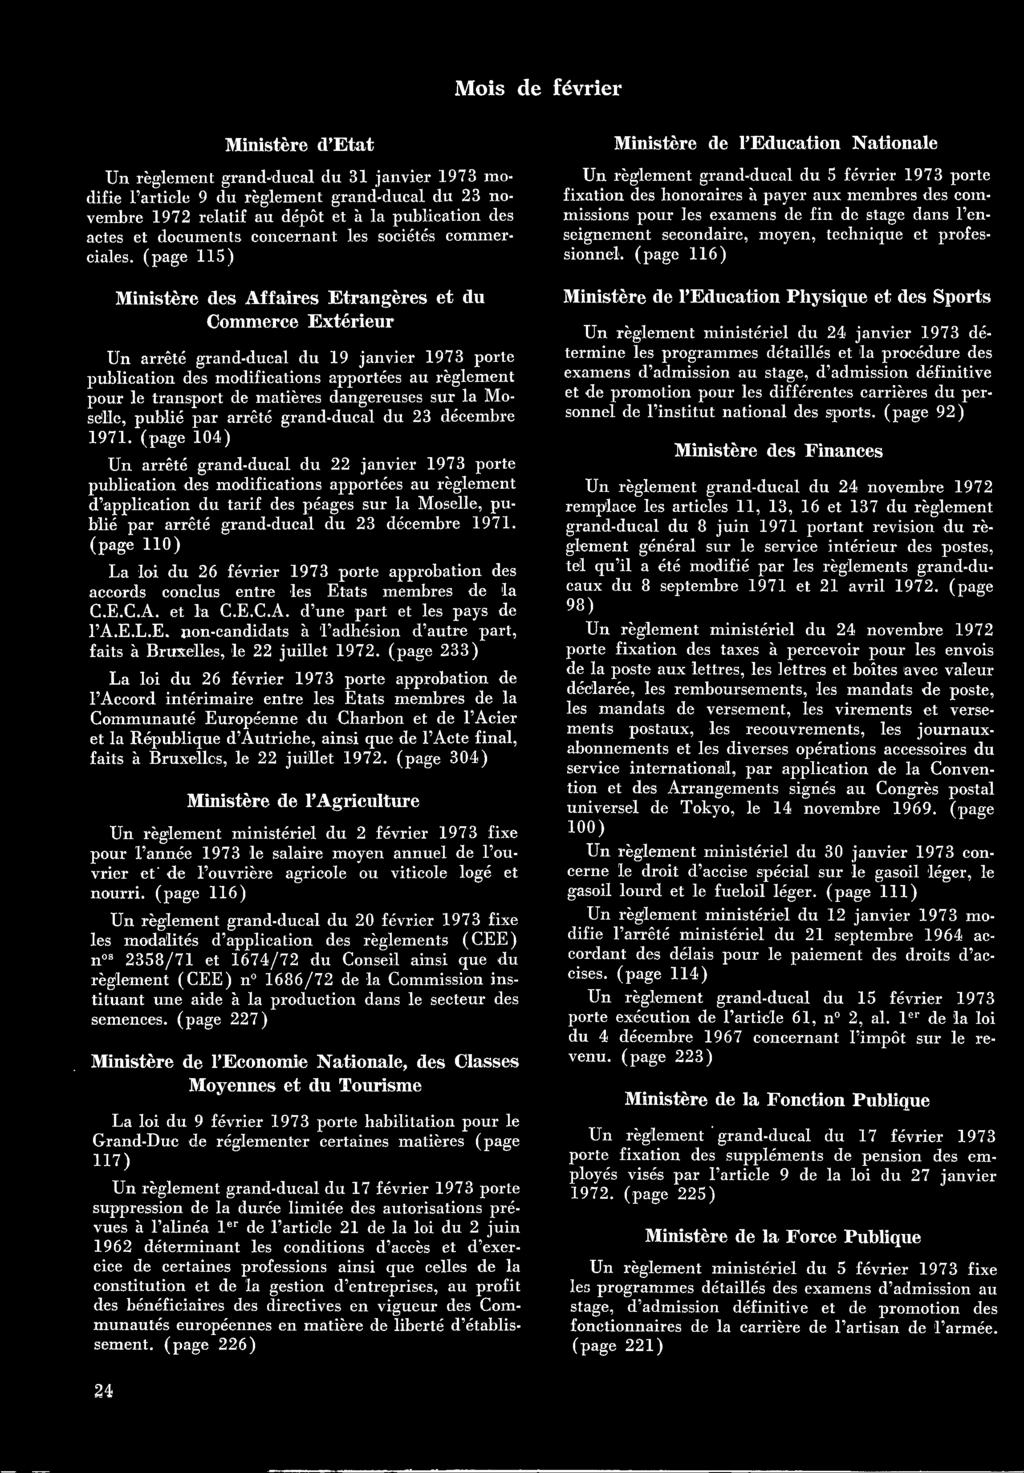 décembre 1971. (page 110) La loi du 26 février 1973 porte approbation des accords conclus entre les Etats membres de la C.E.C.A. et la C.E.C.A. d'une part et les pays de l'a.e.l.e. non-candidats à l'adhésion d'autre part, faits à Bruxelles, le 22 juillet 1972.